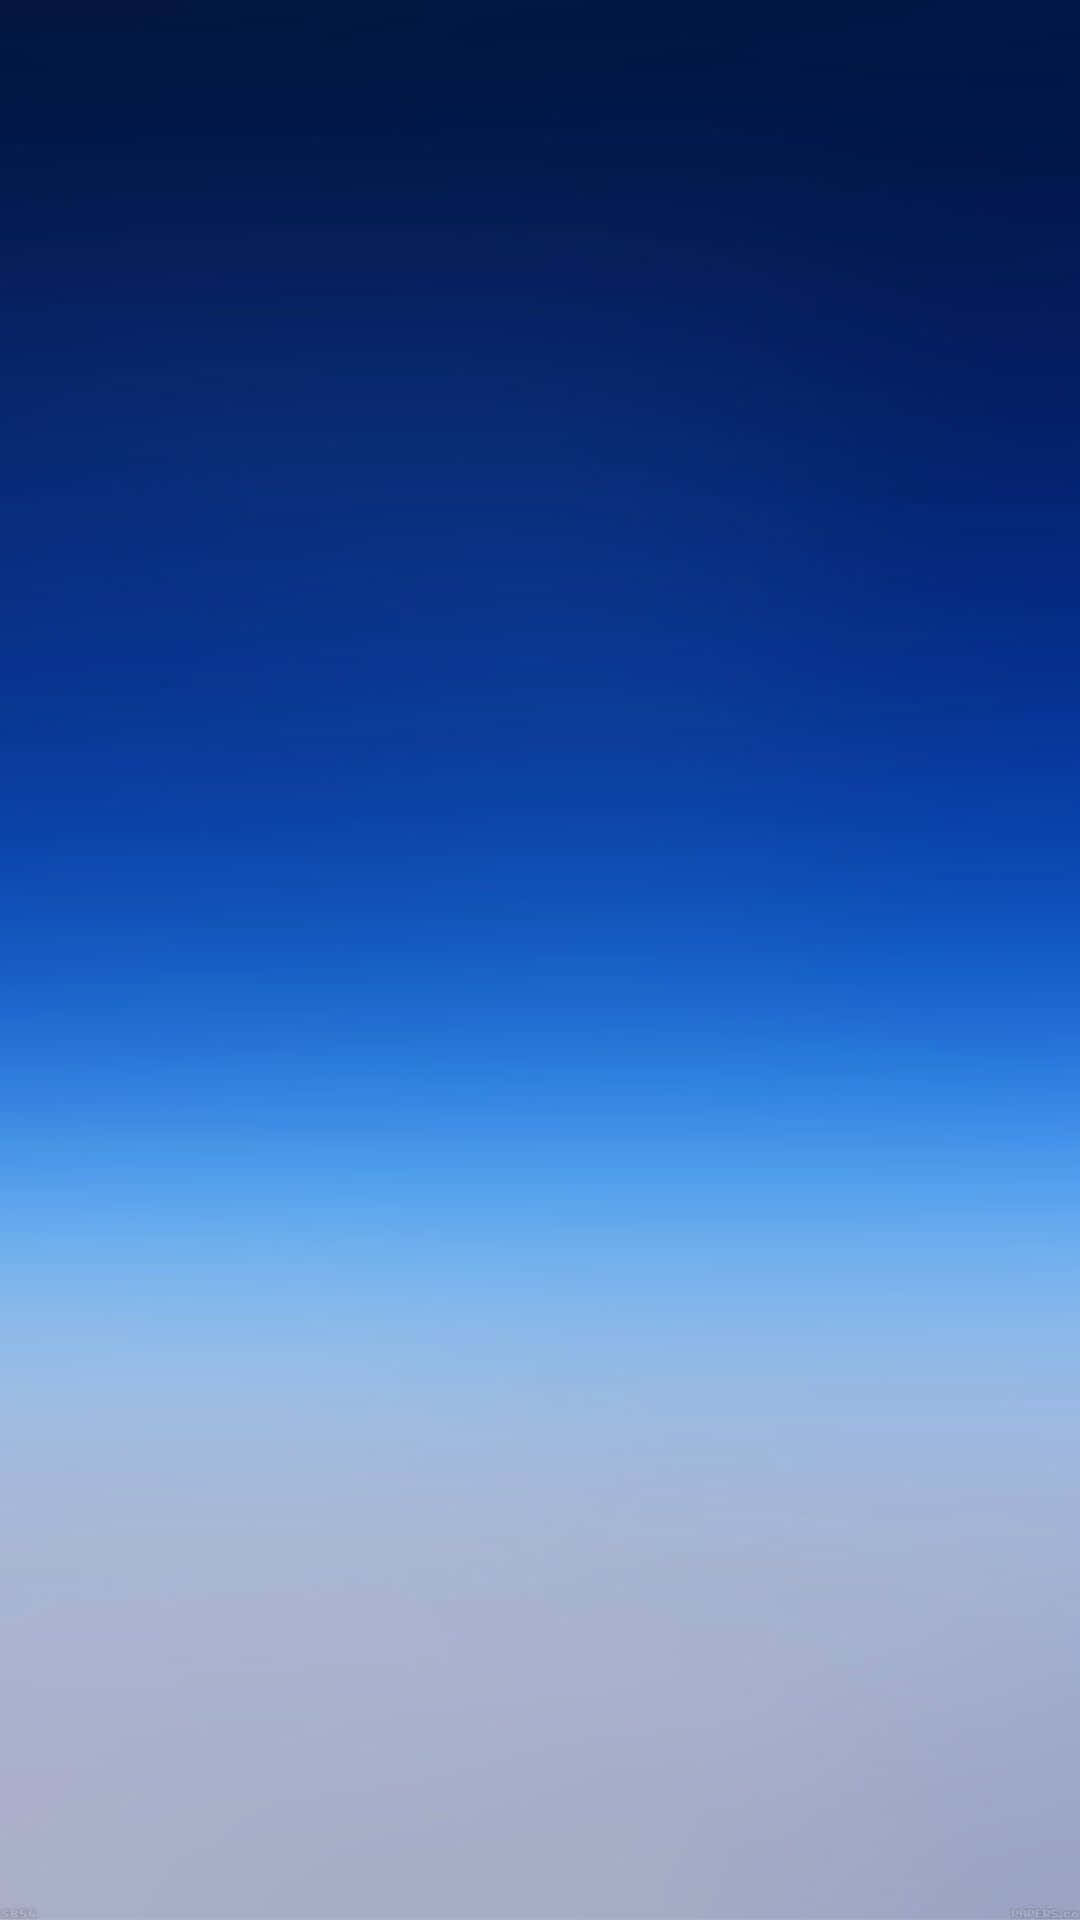  Farbverlauf Hintergrundbild 1080x1920. Blauer Hintergrund Mit Farbverlauf